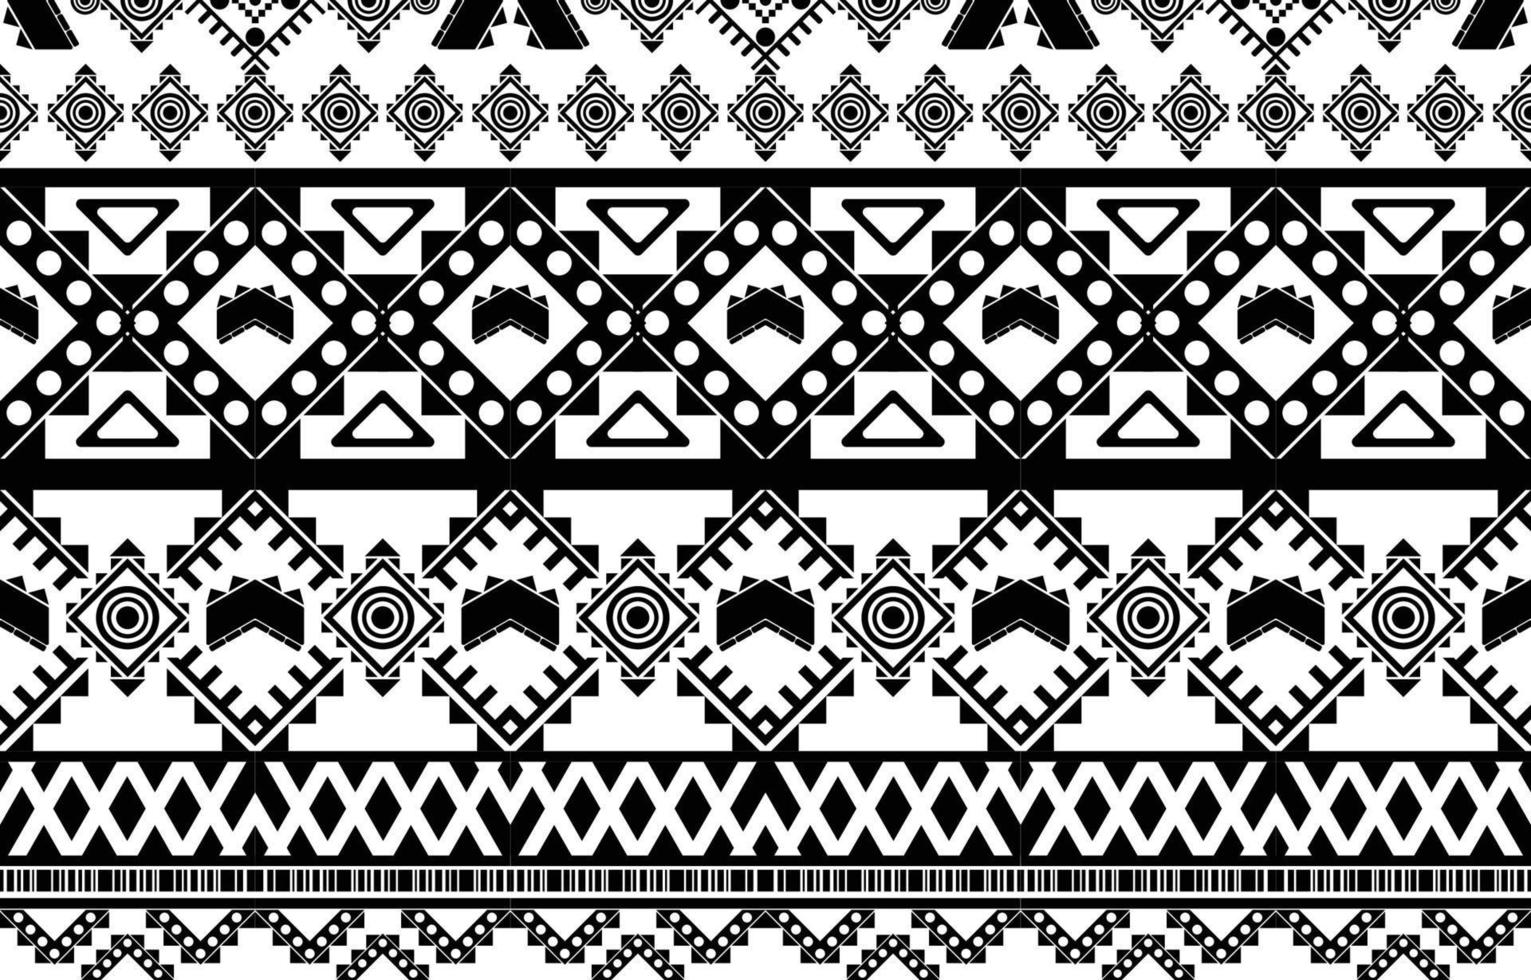 patrón geométrico étnico abstracto blanco y negro tribal africano. diseño para fondo o papel tapiz.ilustración vectorial para imprimir patrones de tela, alfombras, camisas, disfraces, turbantes, sombreros, cortinas. vector